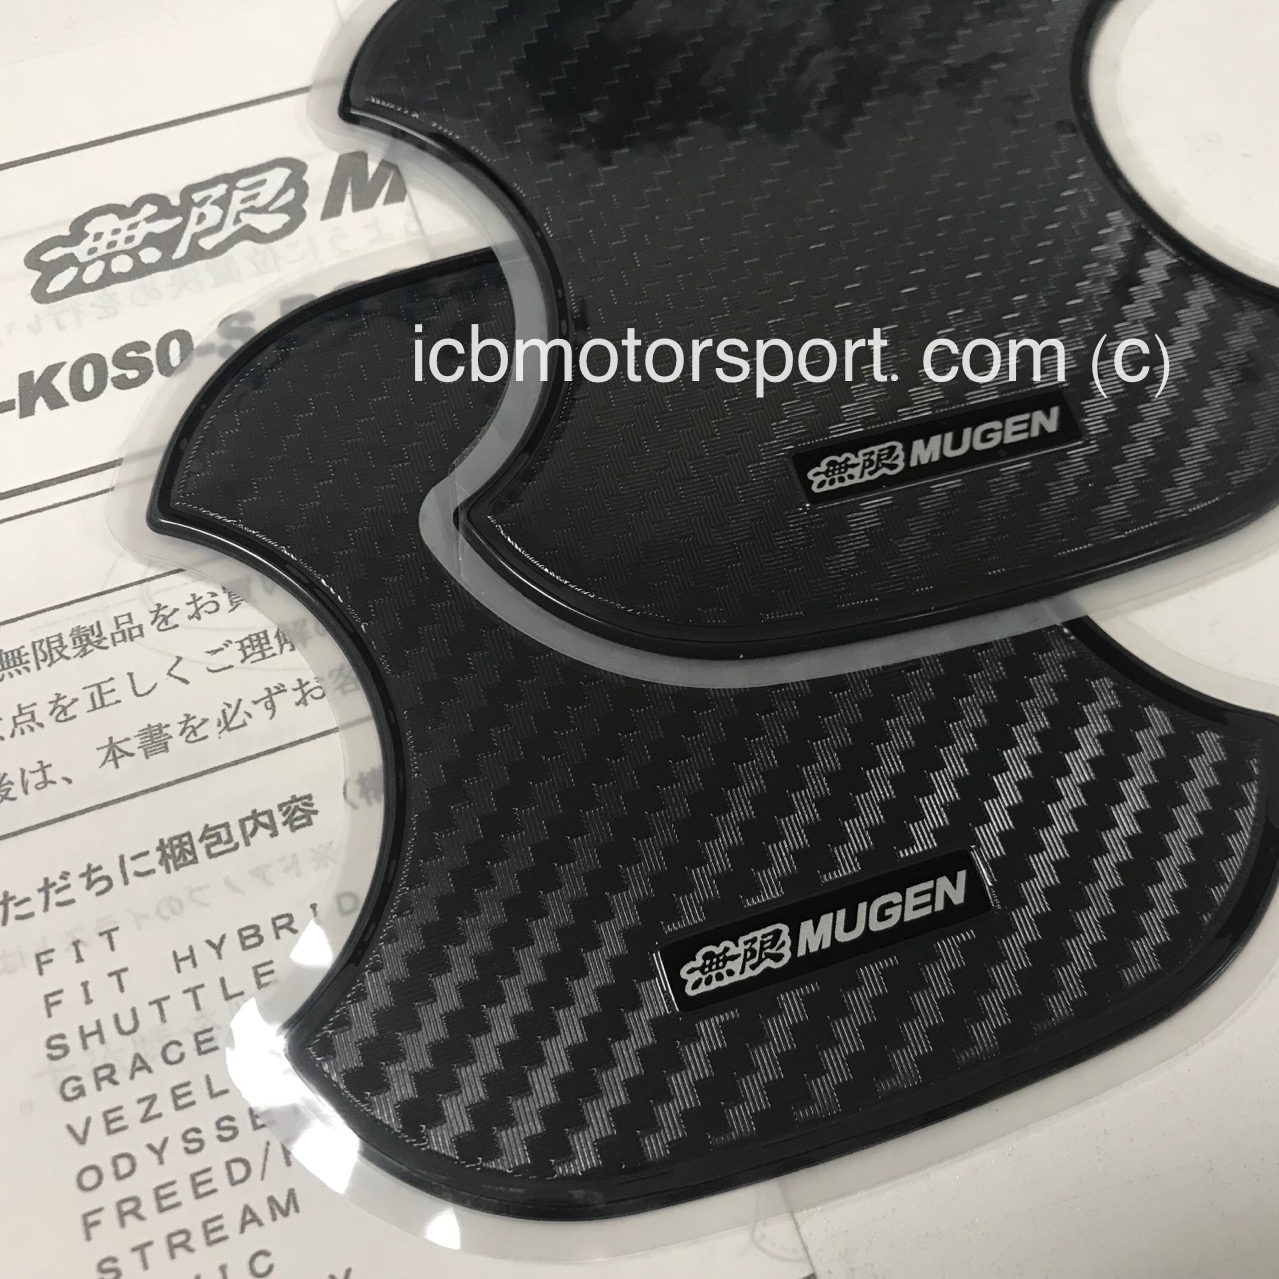 Mugen JAPAN MUGEN RACING DOOR HANDLE PROTECTOR  S Size 08P48-XG8-K0S0-S W/ TRACKING 4527377264591 